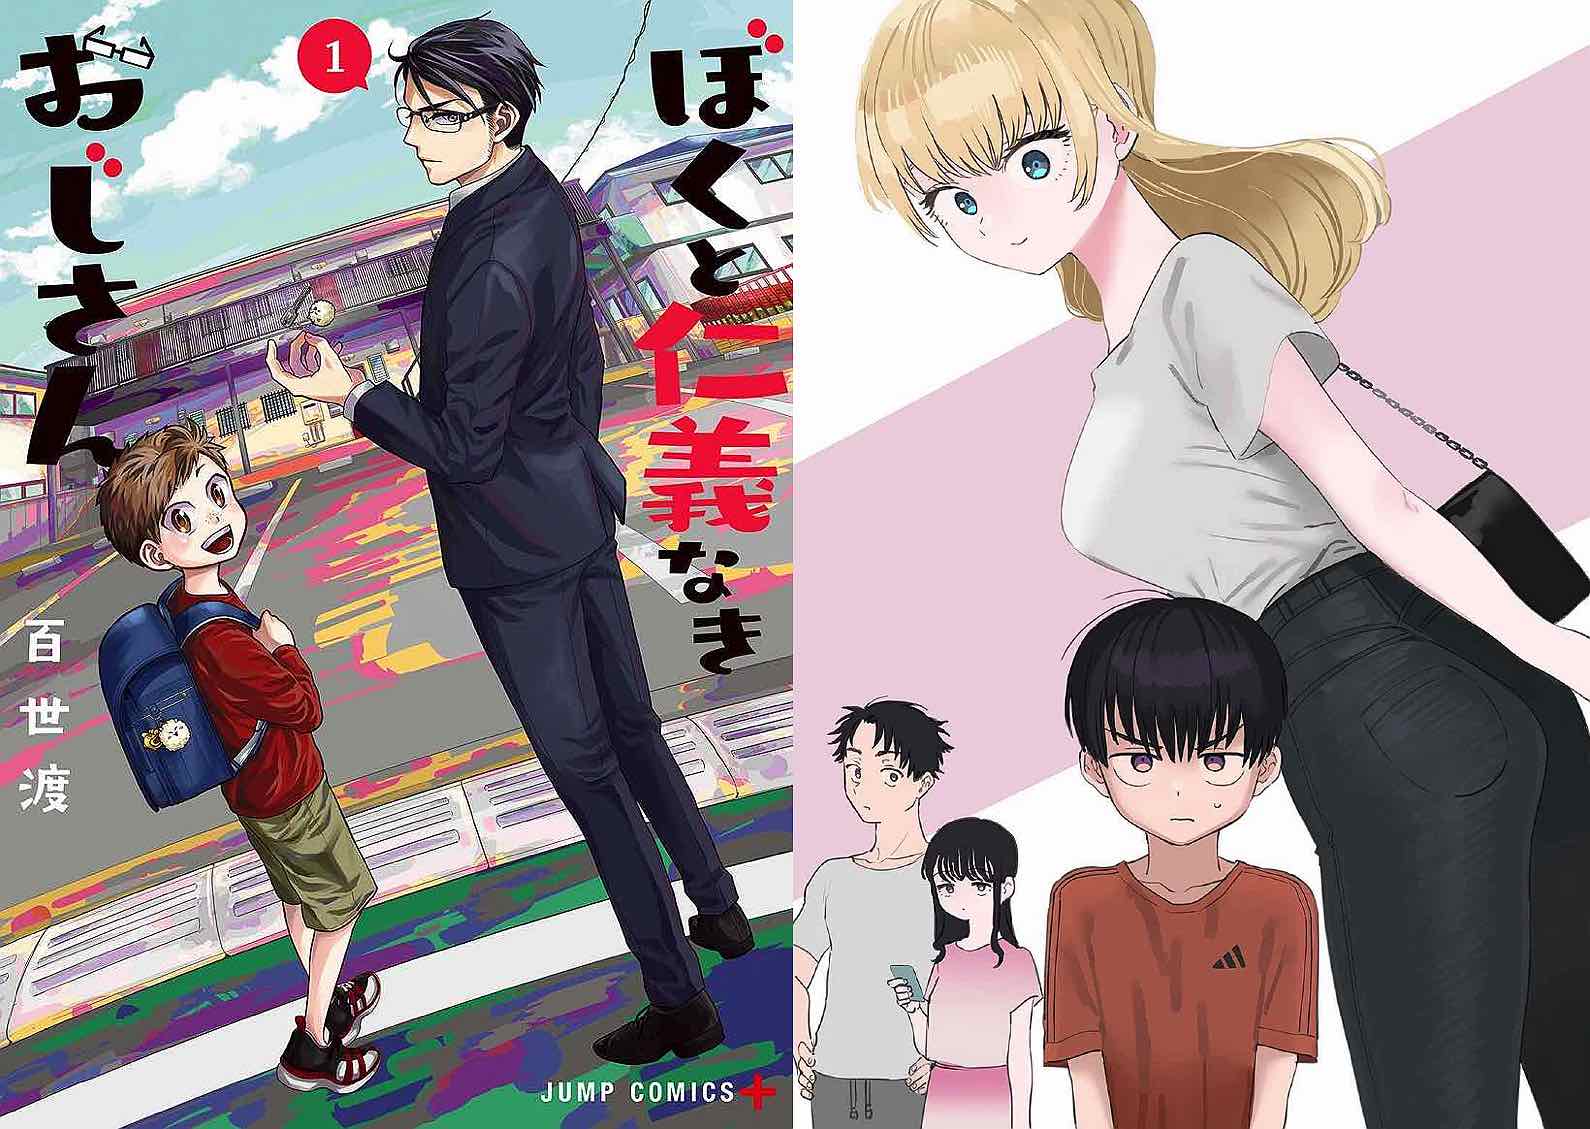 Gate Comics – Comics, Manga, Anime and Video Game Reviews